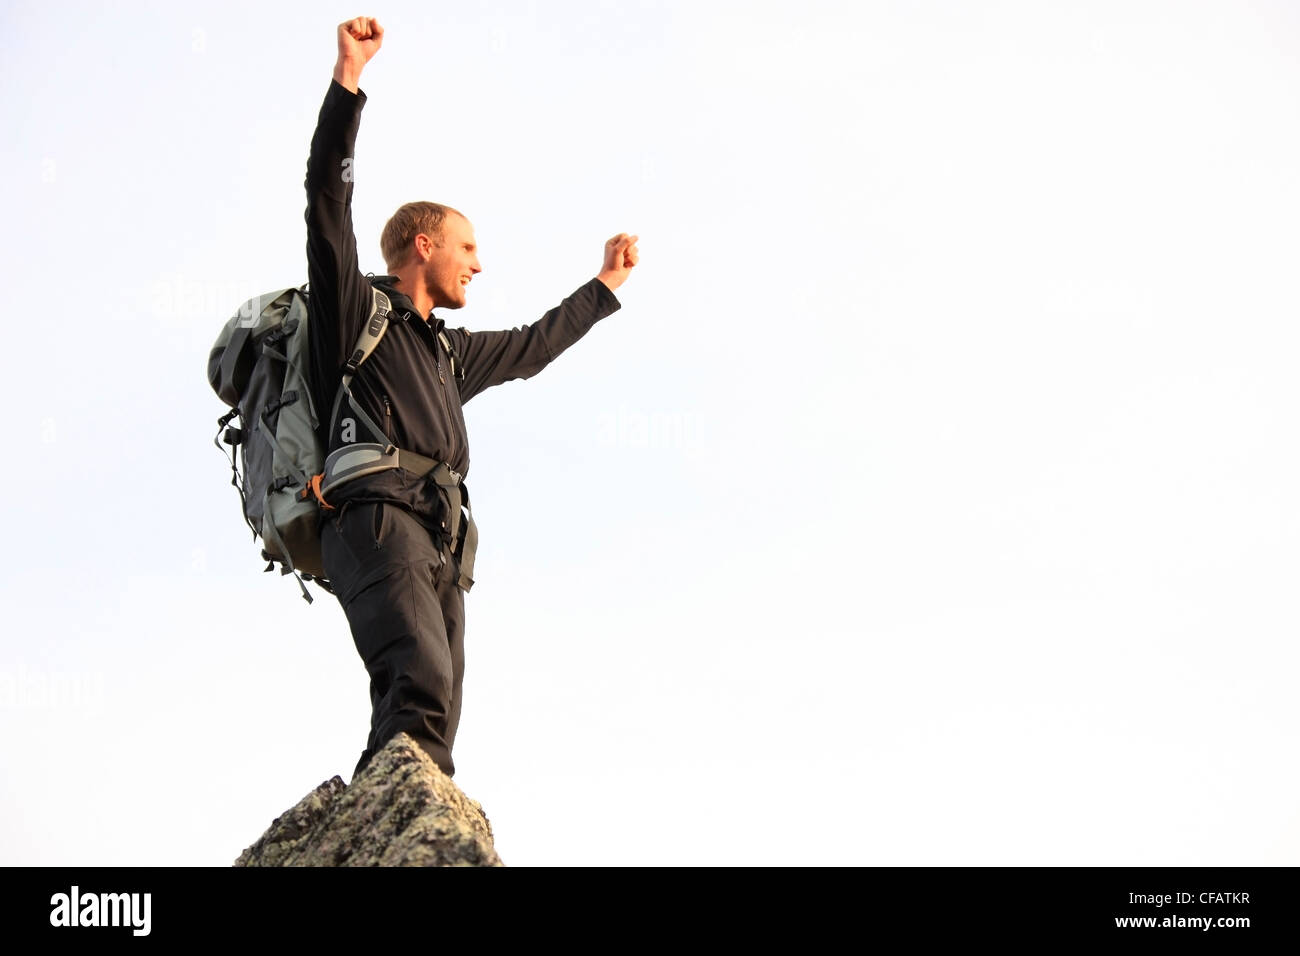 Jeune homme lève son poing en triomphe après l'ascension d'une montagne, Yukon, Canada Banque D'Images